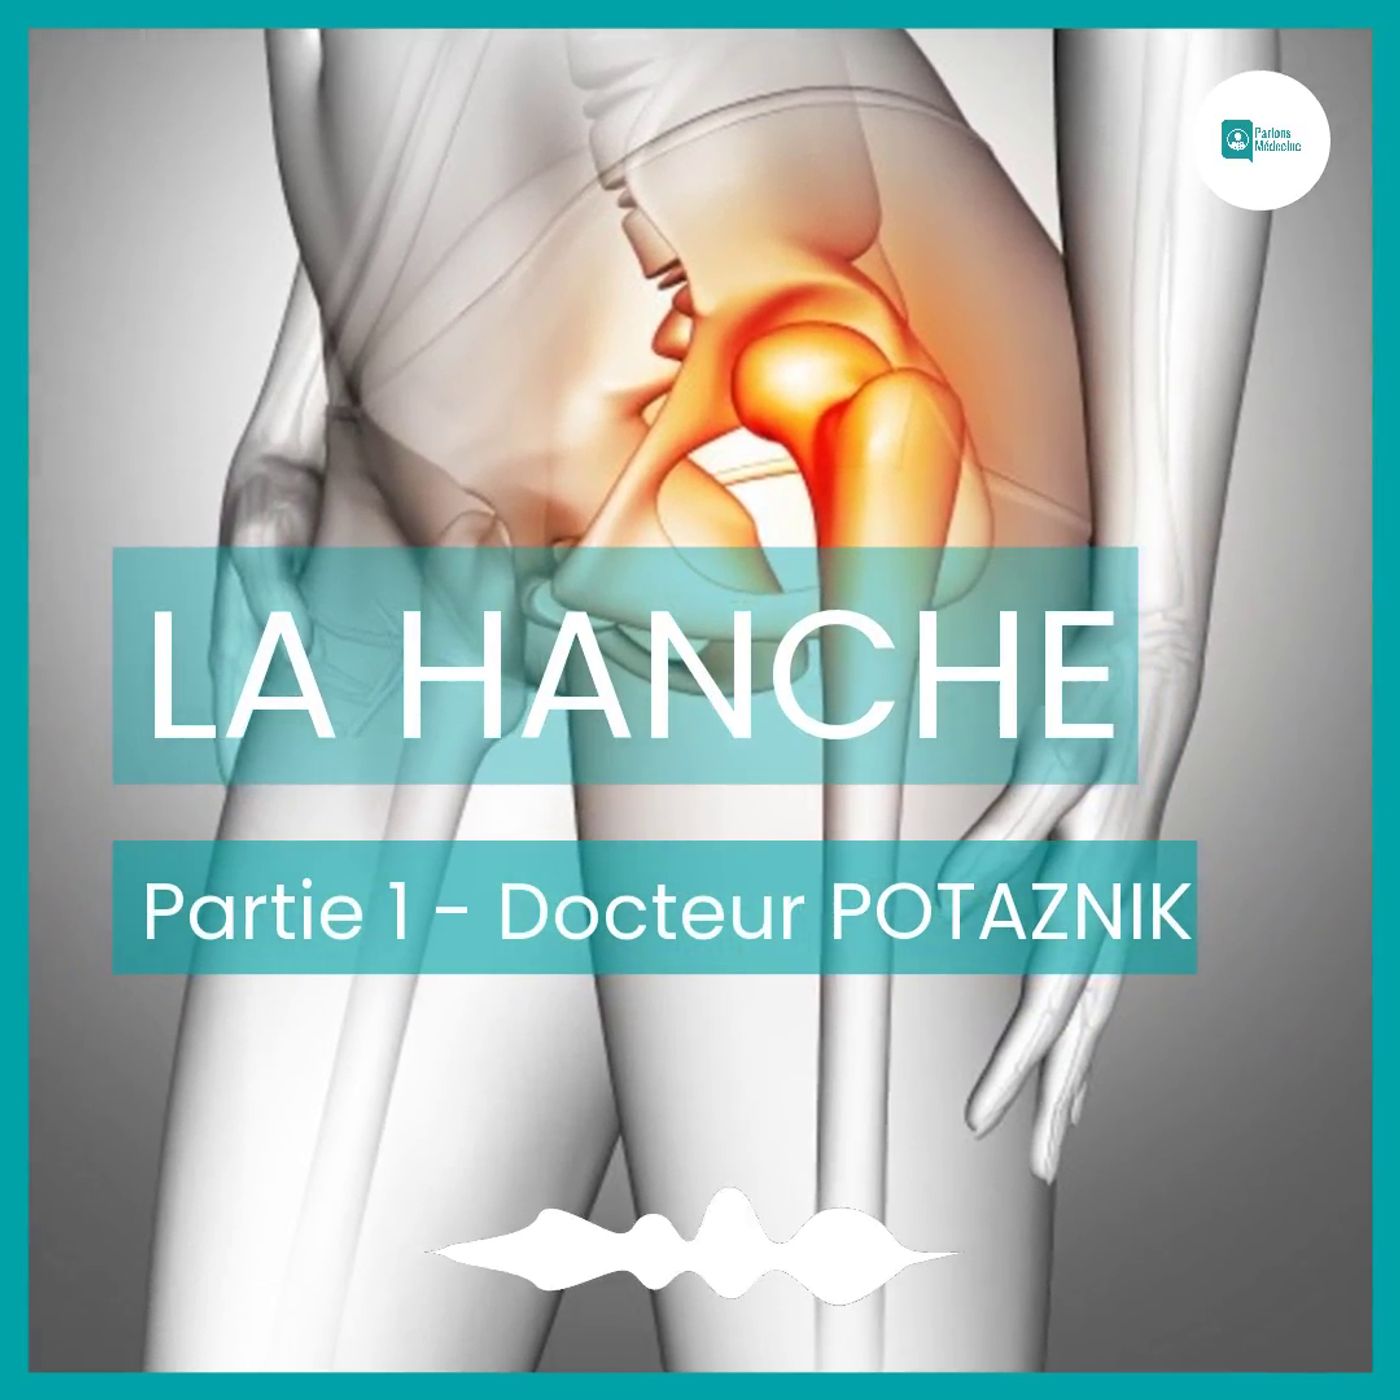 La hanche - Docteur Potaznick - Partie 1